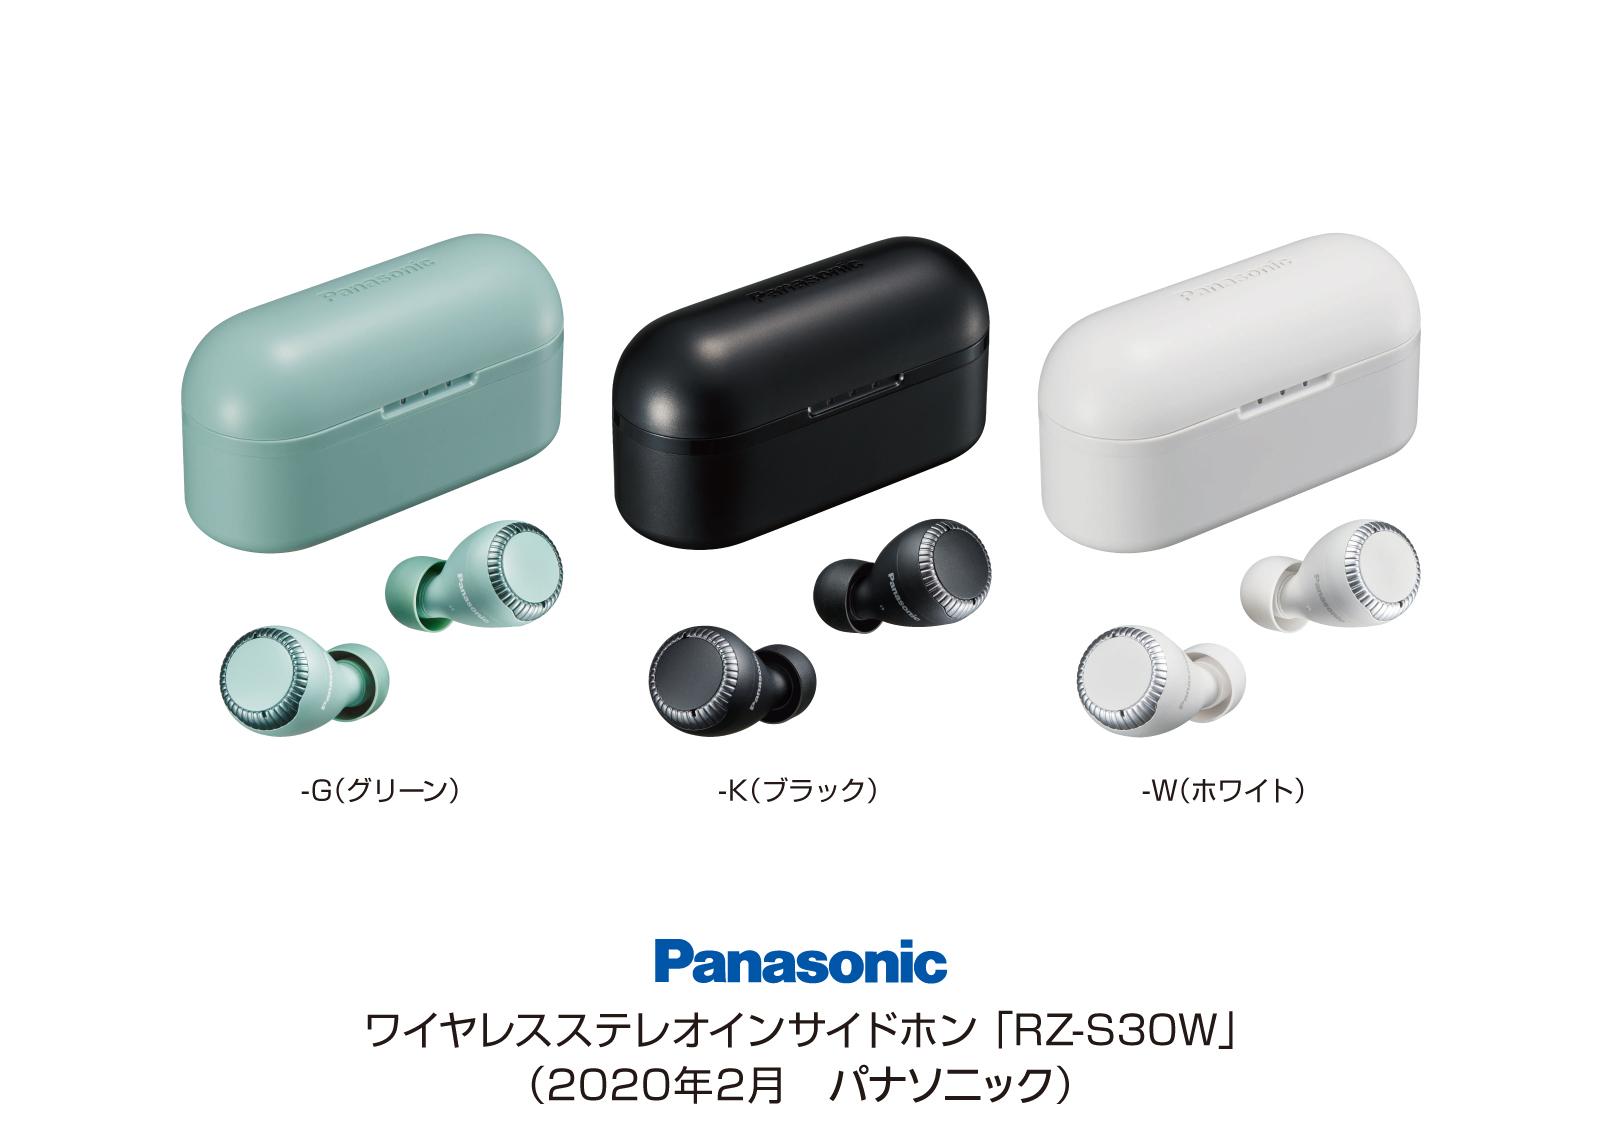 完全ワイヤレスイヤホン RZ-S30W を発売 | 個人向け商品 | 製品・サービス | プレスリリース | Panasonic